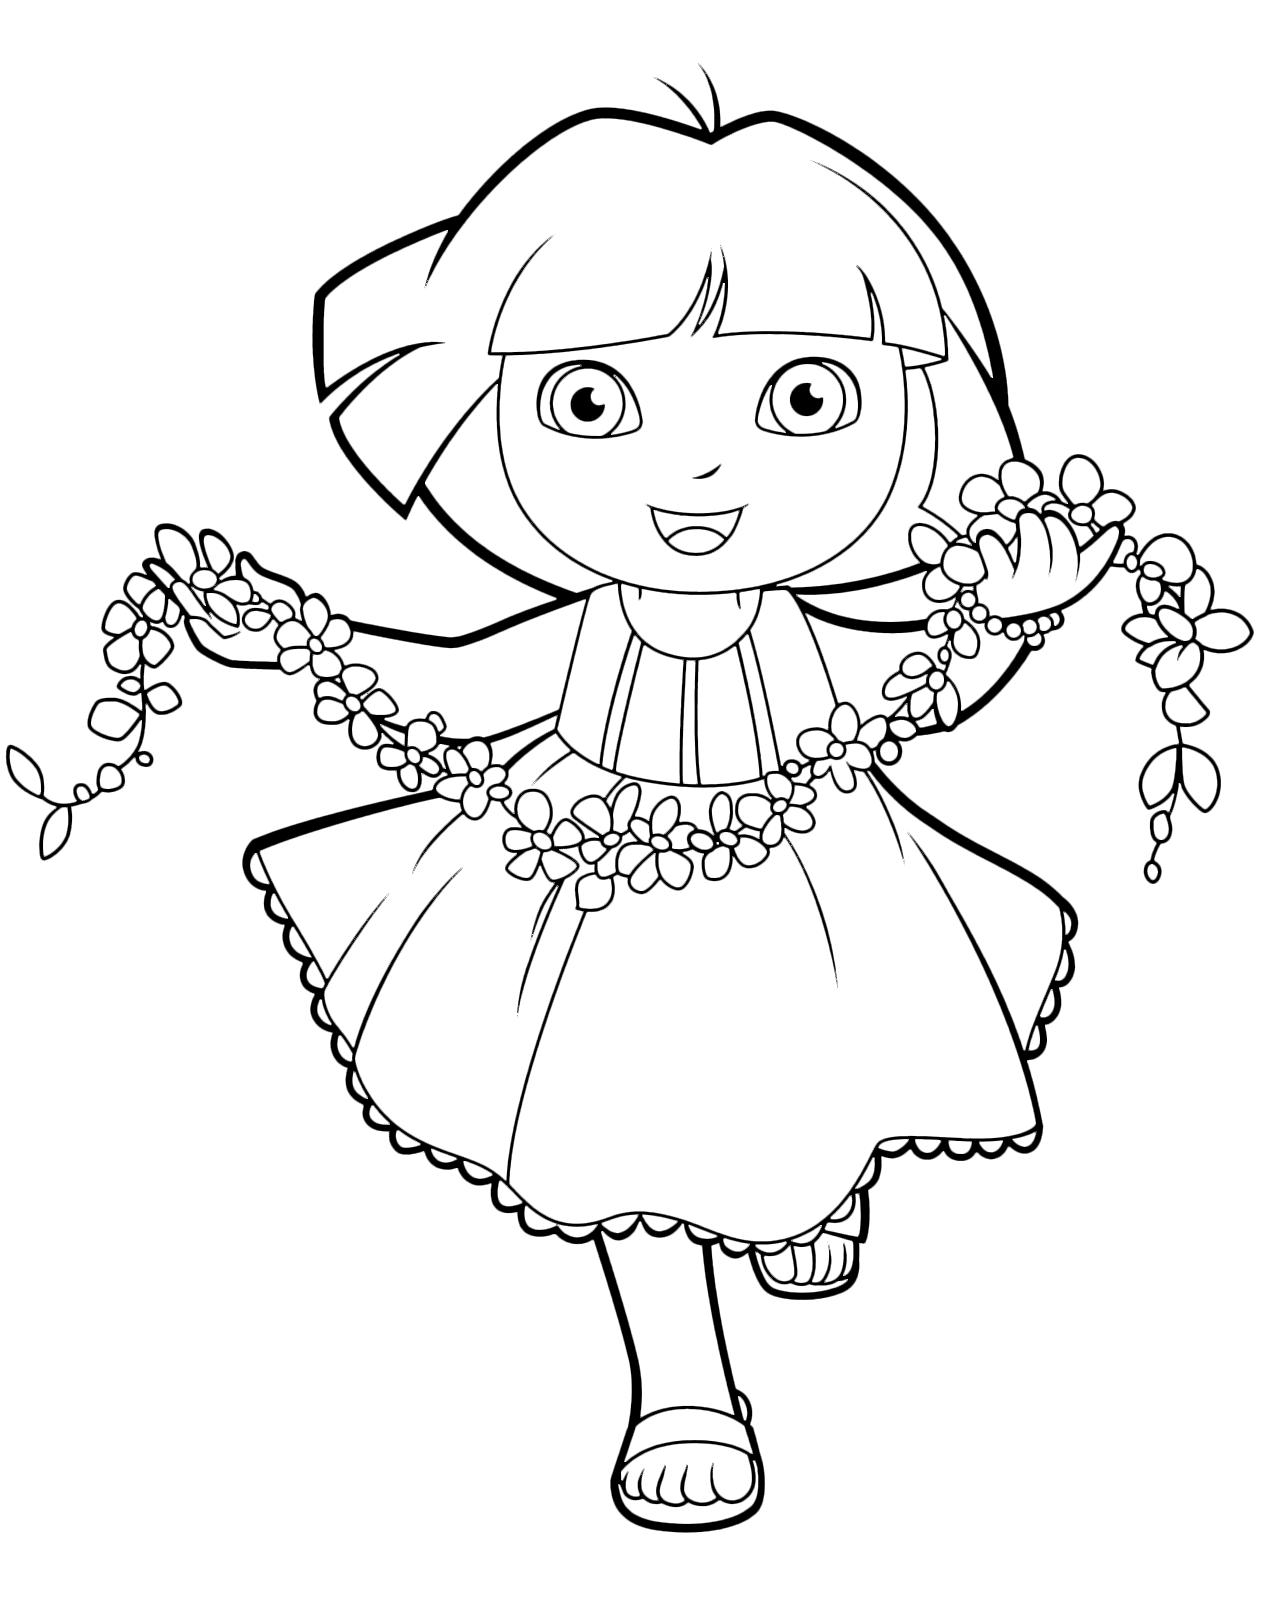 Dora l'esploratrice - Dora corre felice con una ghirlanda di fiori in mano